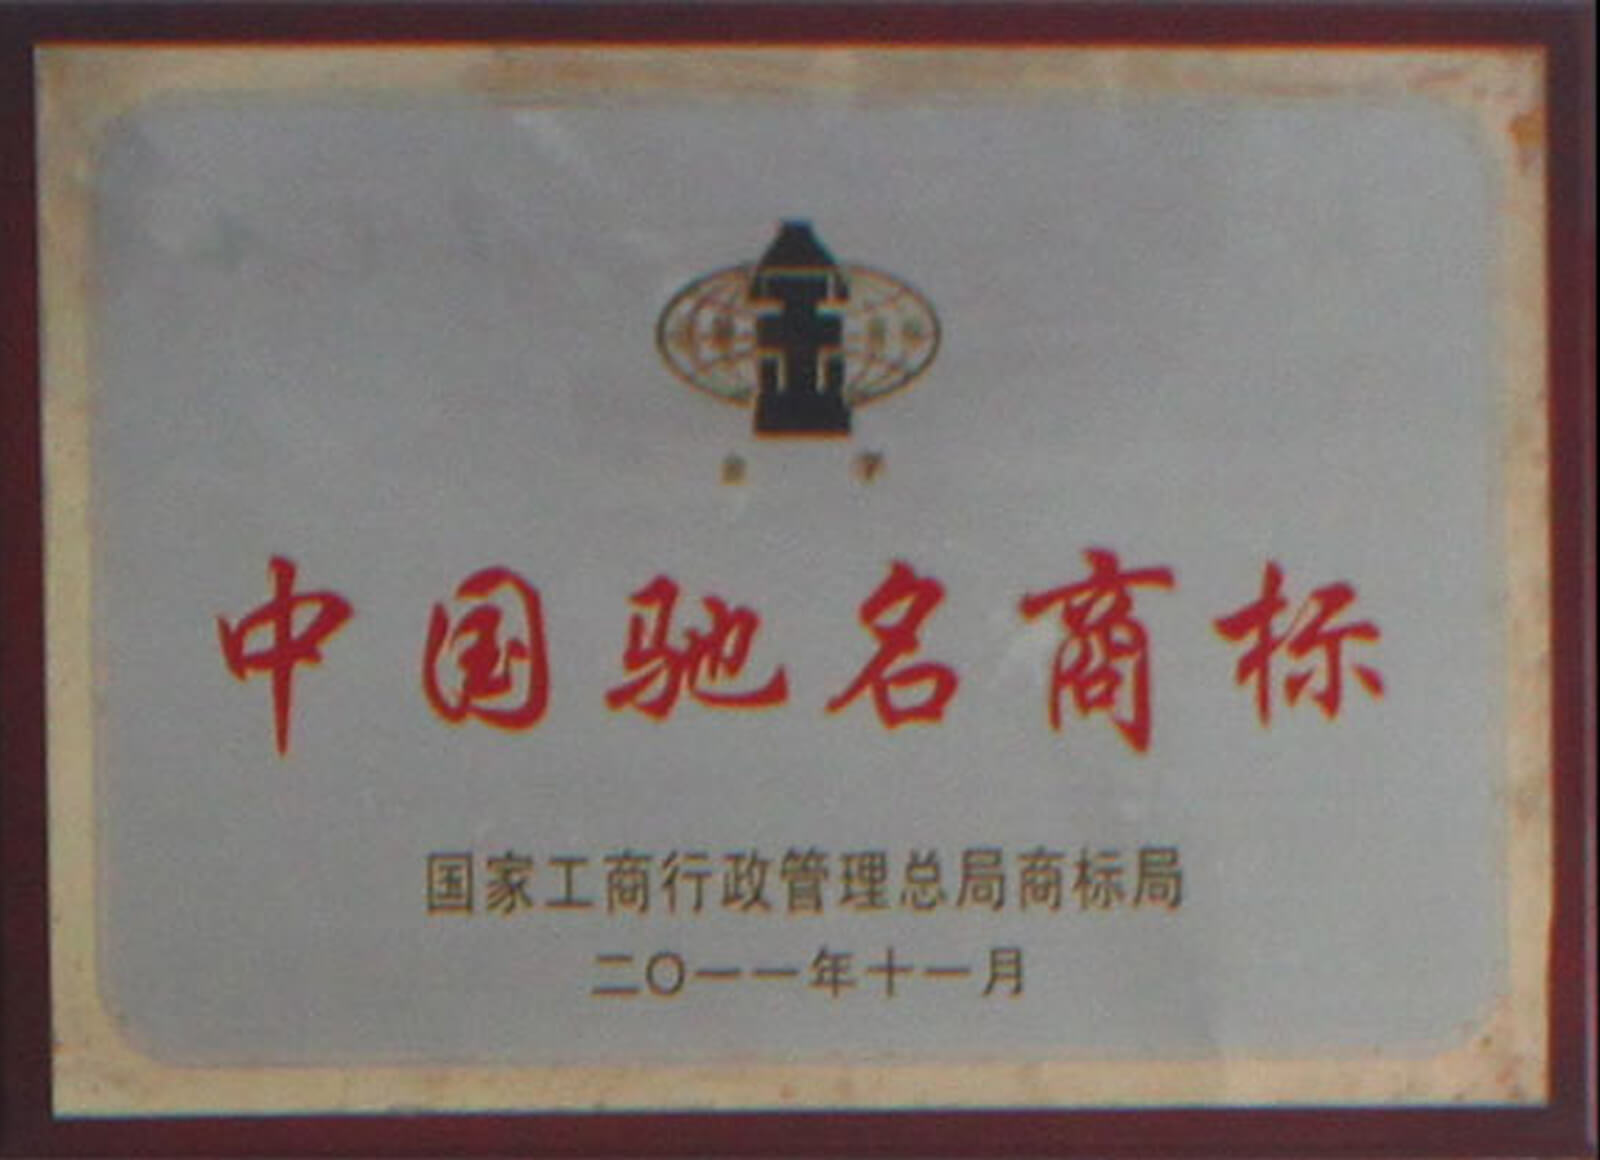 中国著名商标